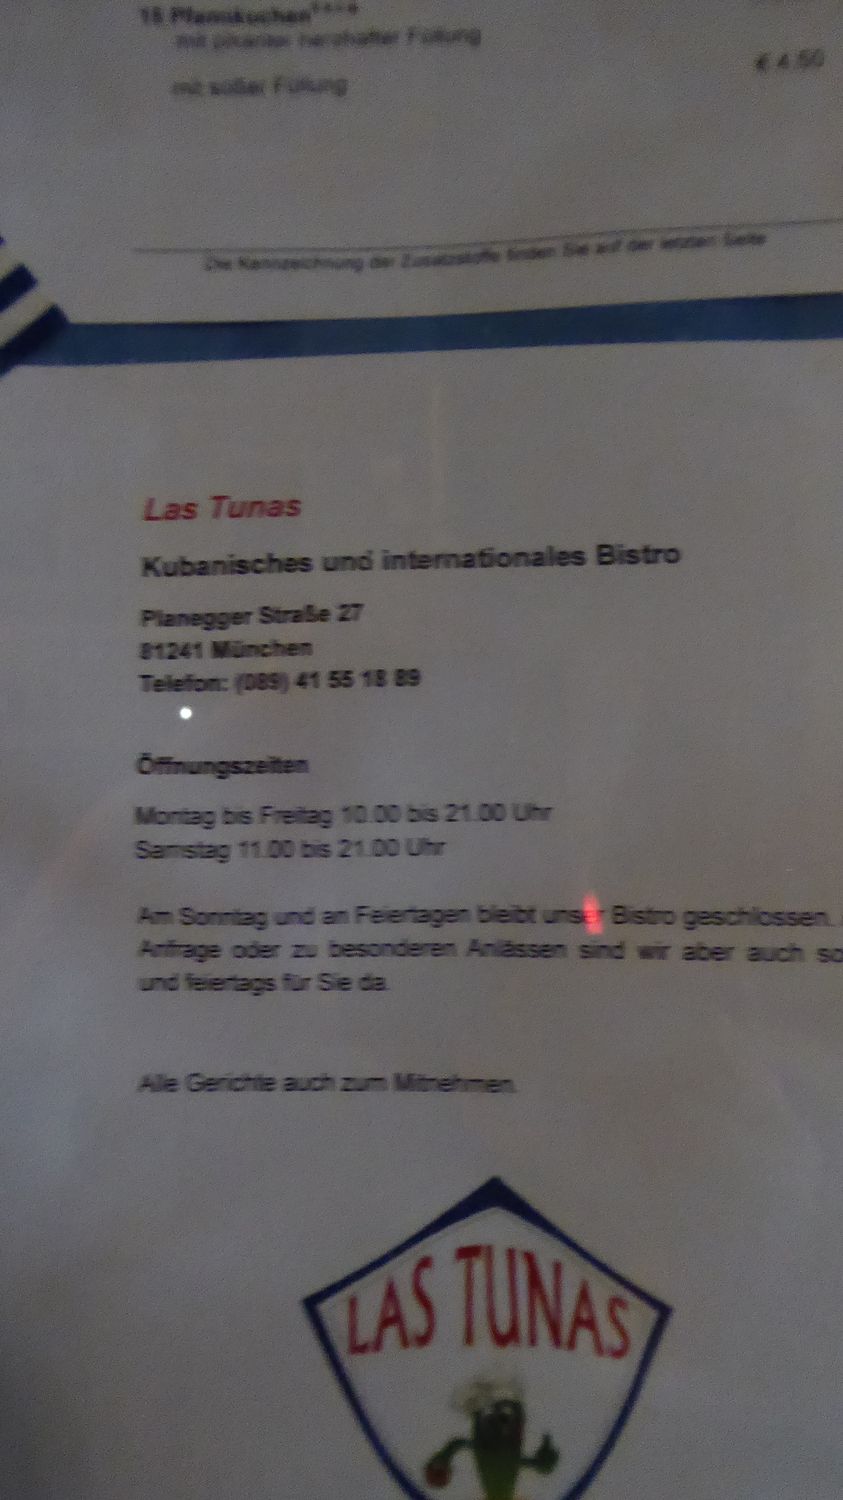 Las Tunas - Kubanische und internationale Spezialitäten - 1 Bewertung -  München Pasing - Planegger Straße | golocal